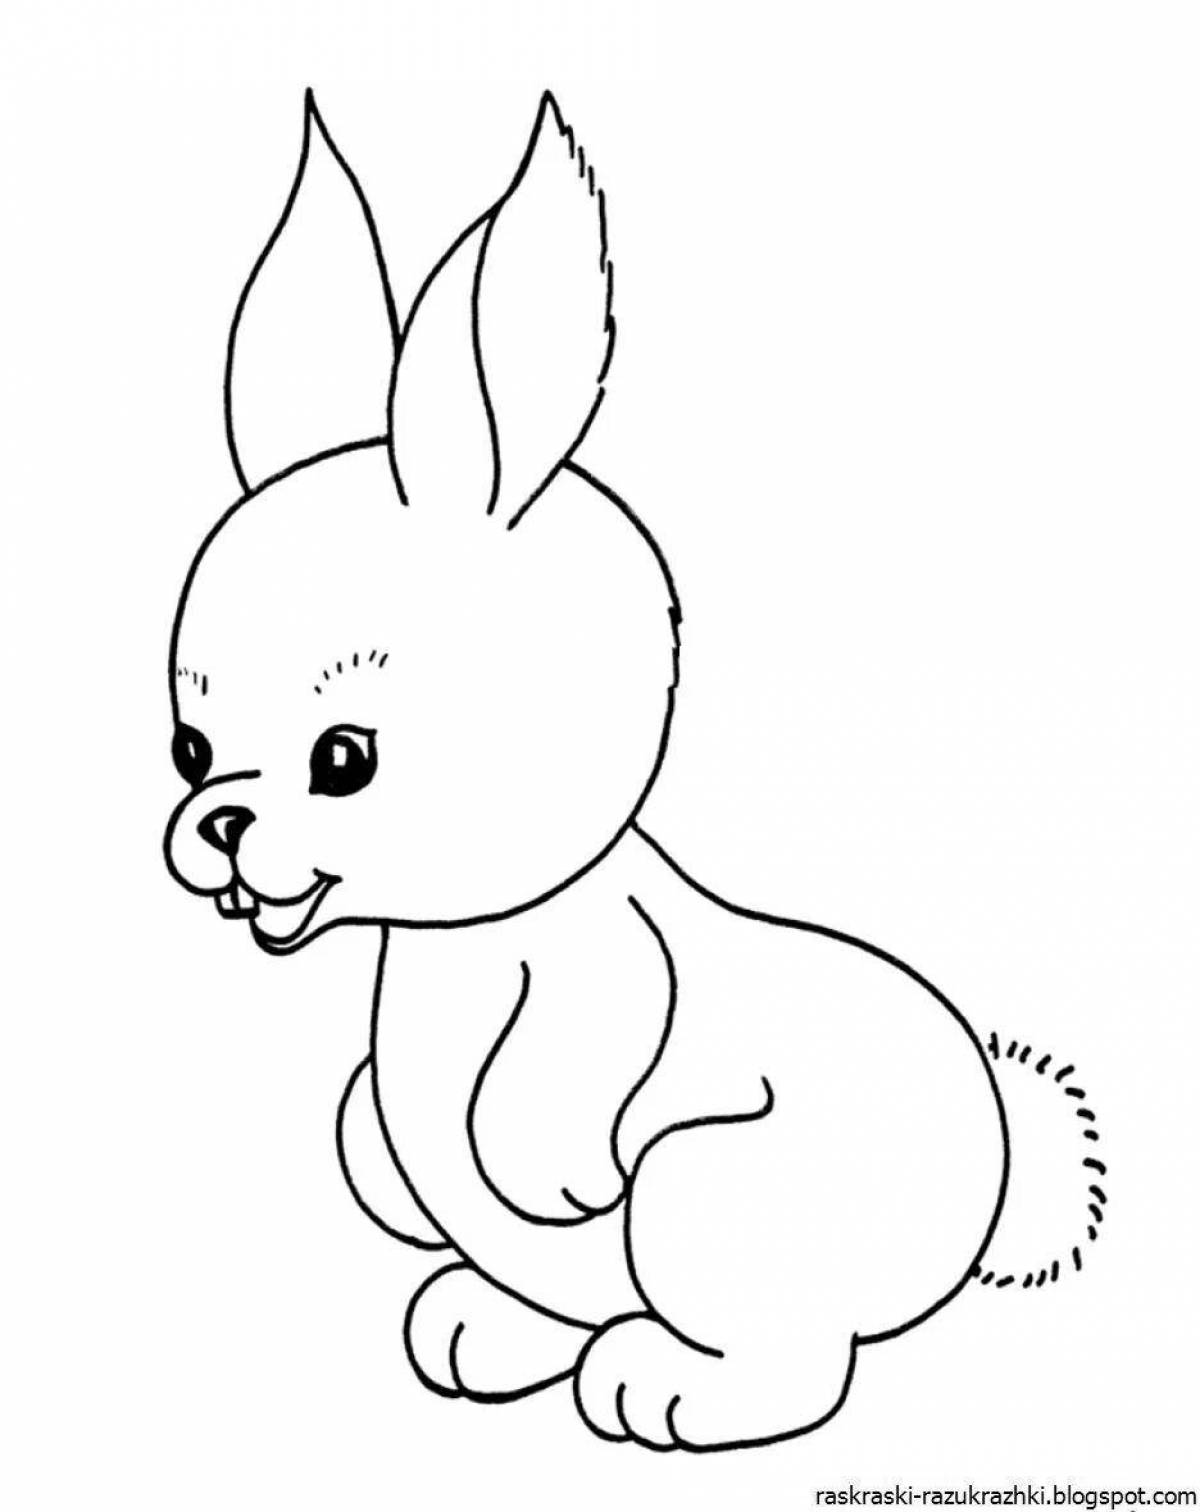 Яркая раскраска кролик для детей 3 4